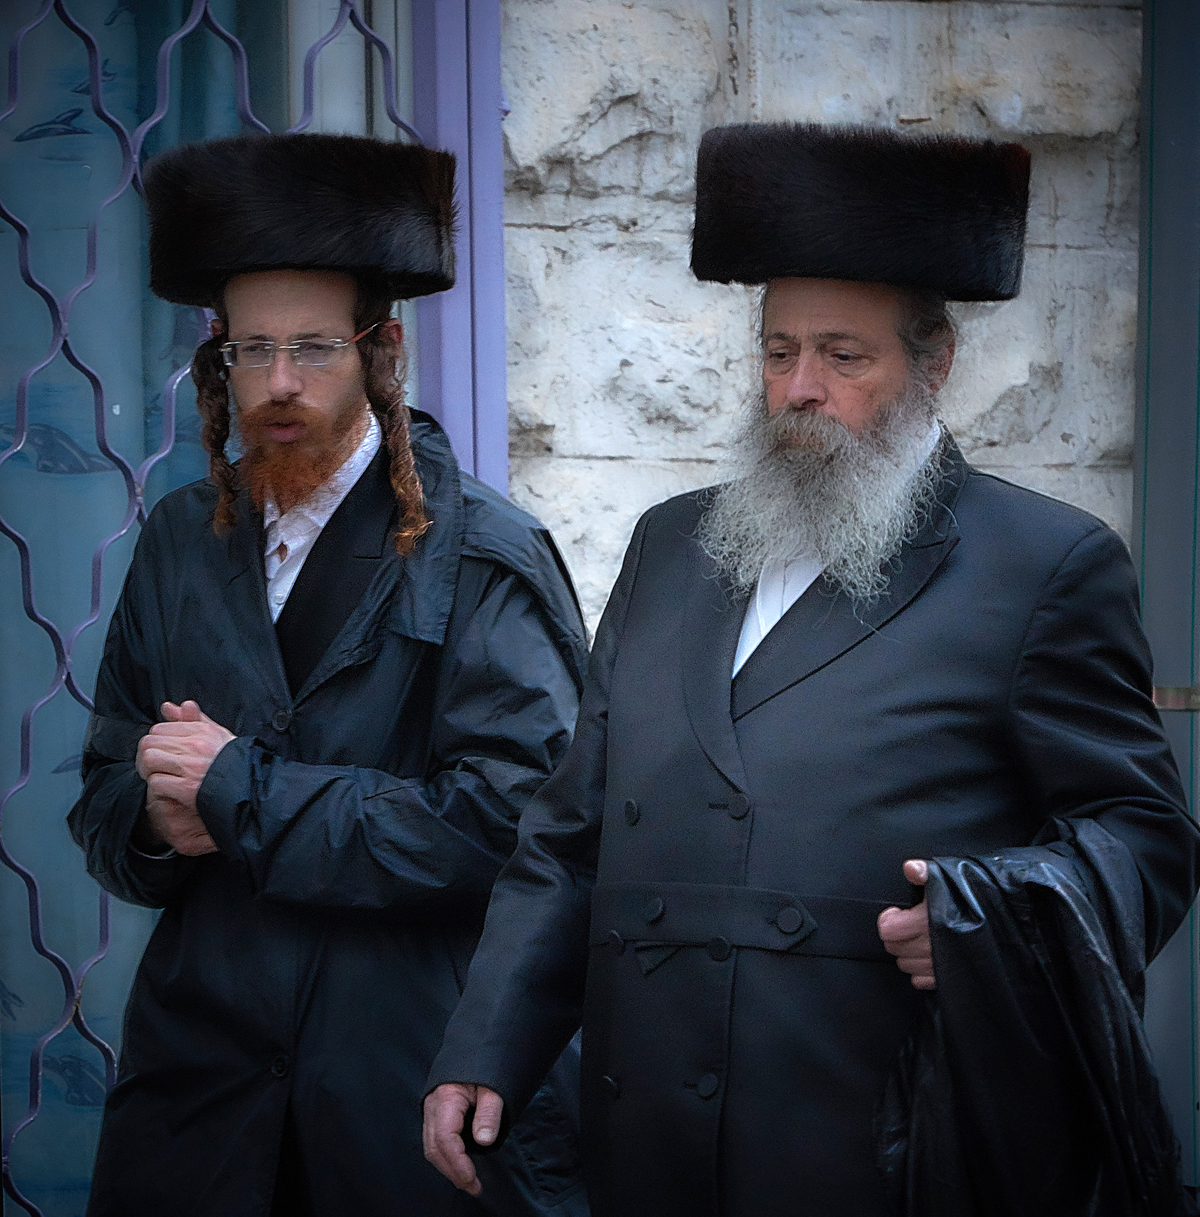 Мимолётные наблюдения в религиозном еврейском квартале...